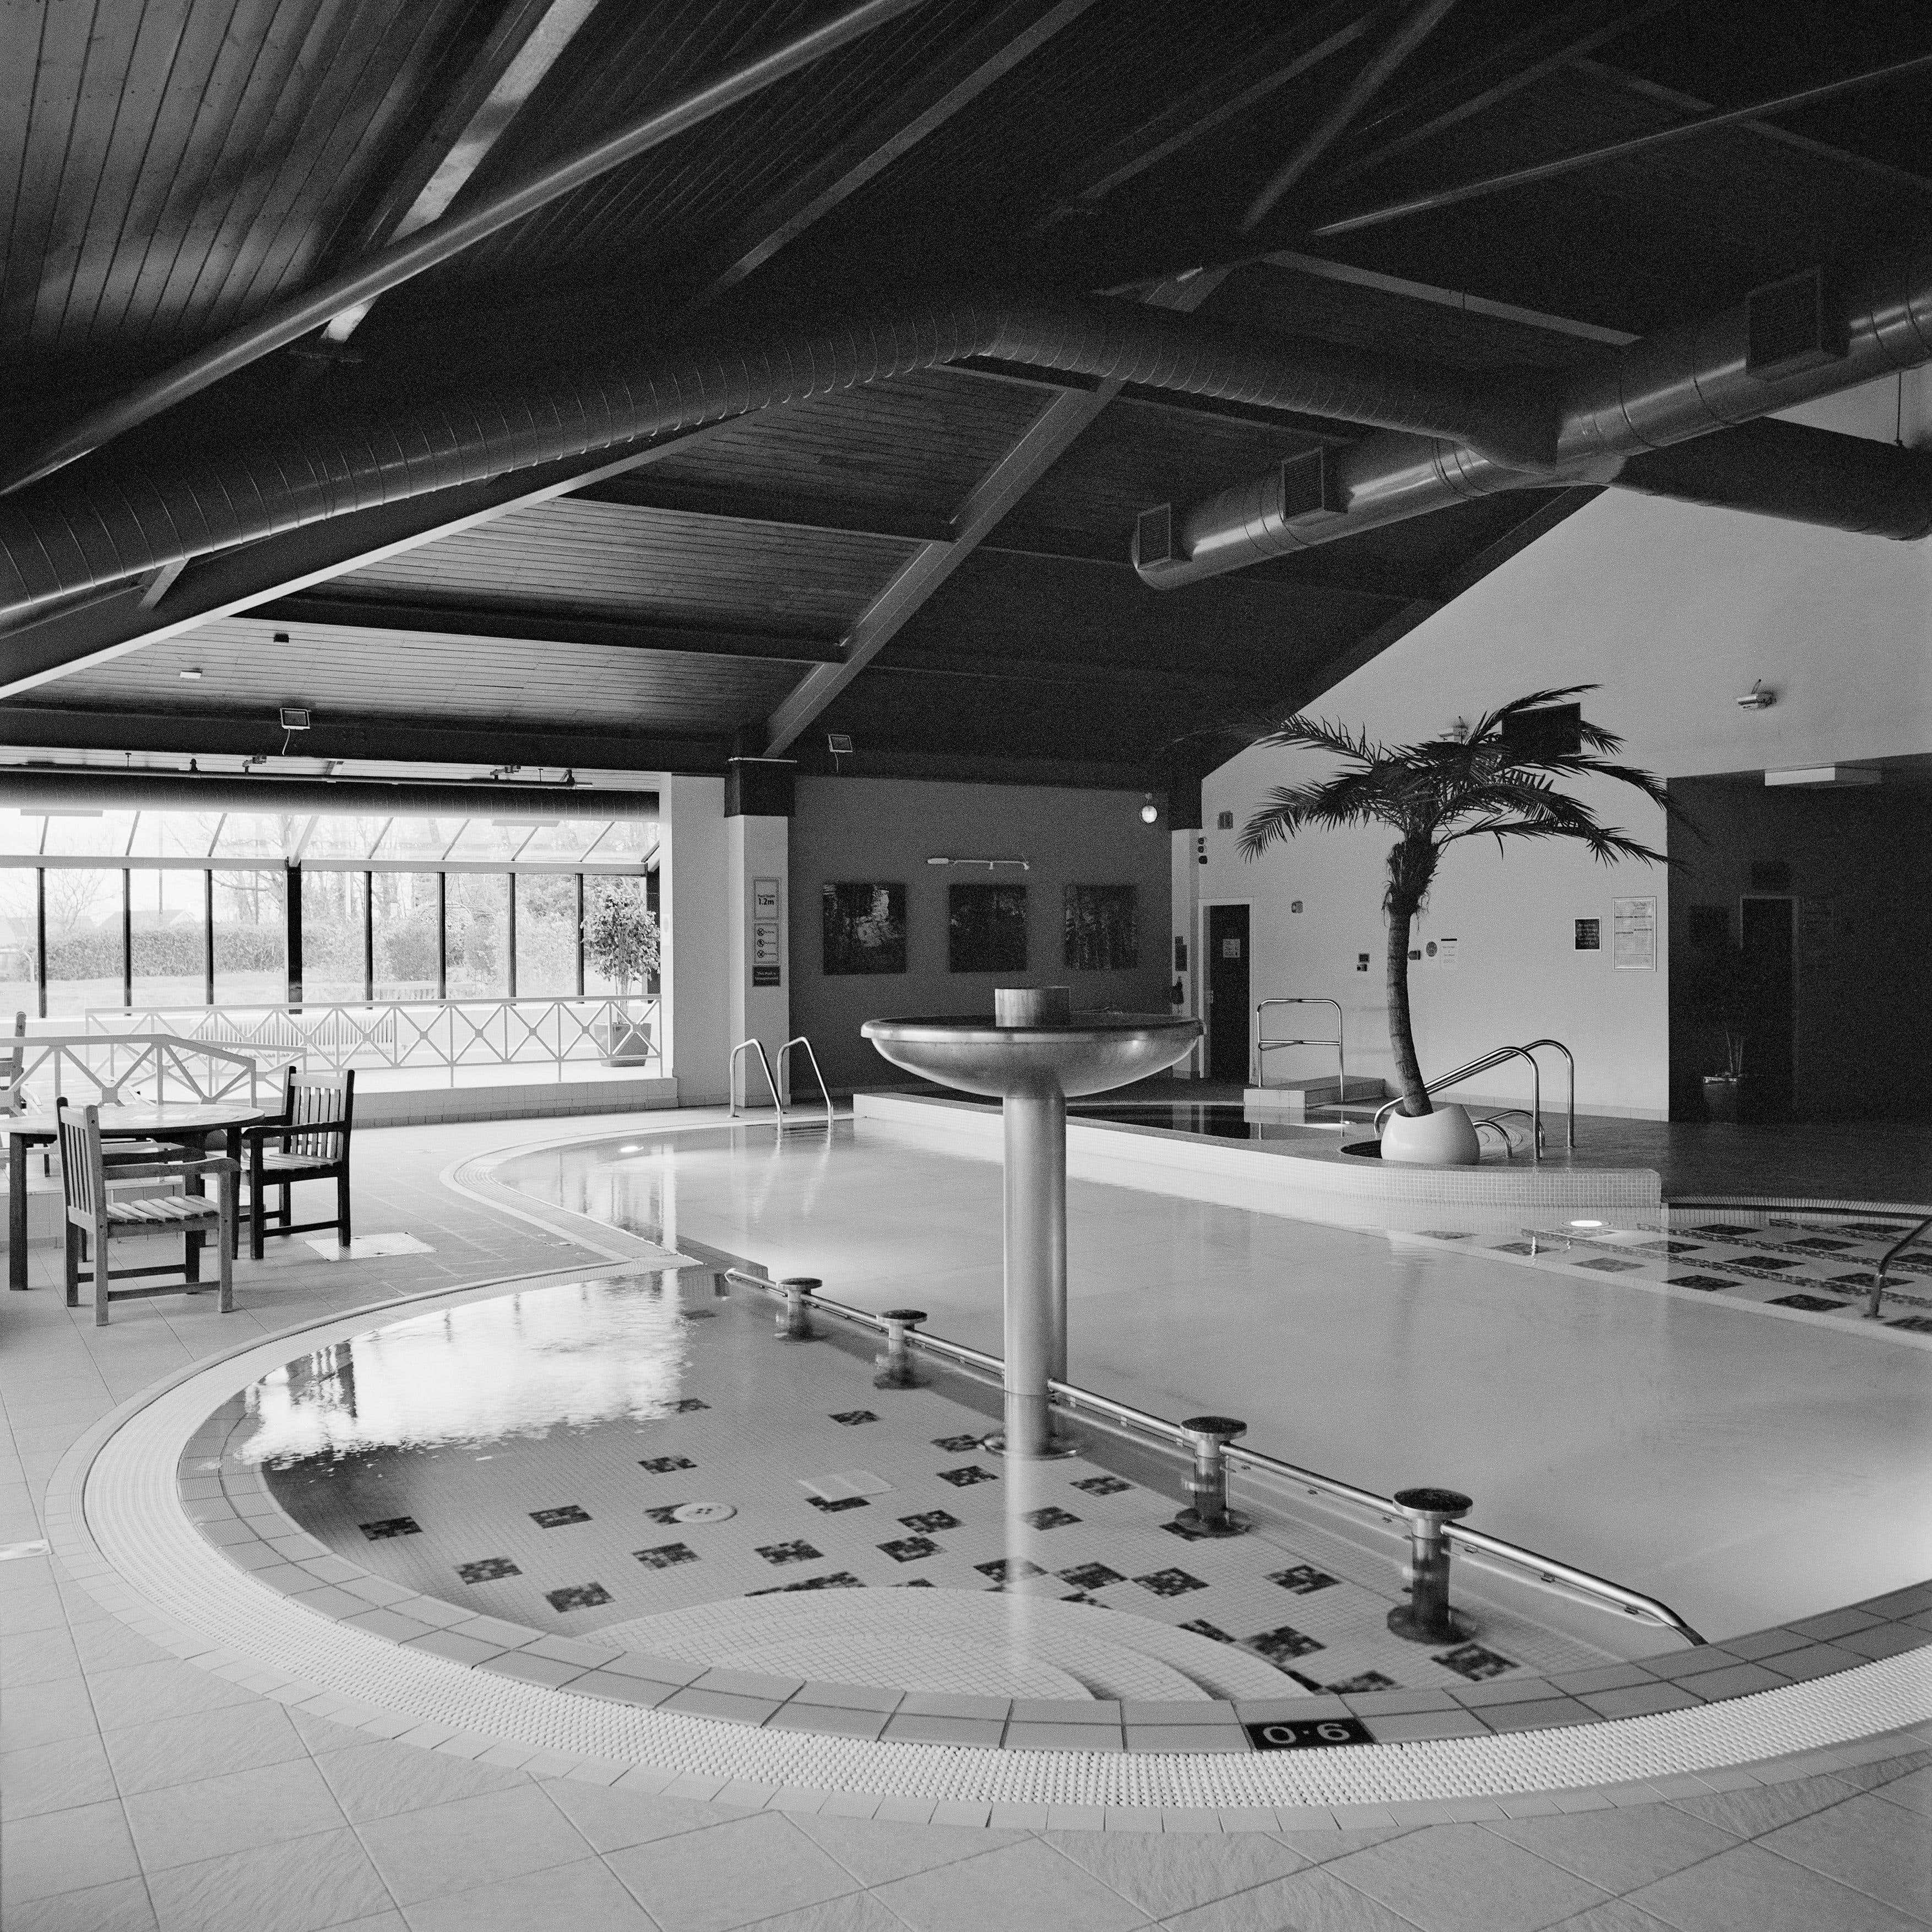 Photographie d'architecture Monochrome Square : Design/One de la piscine avec fontaine